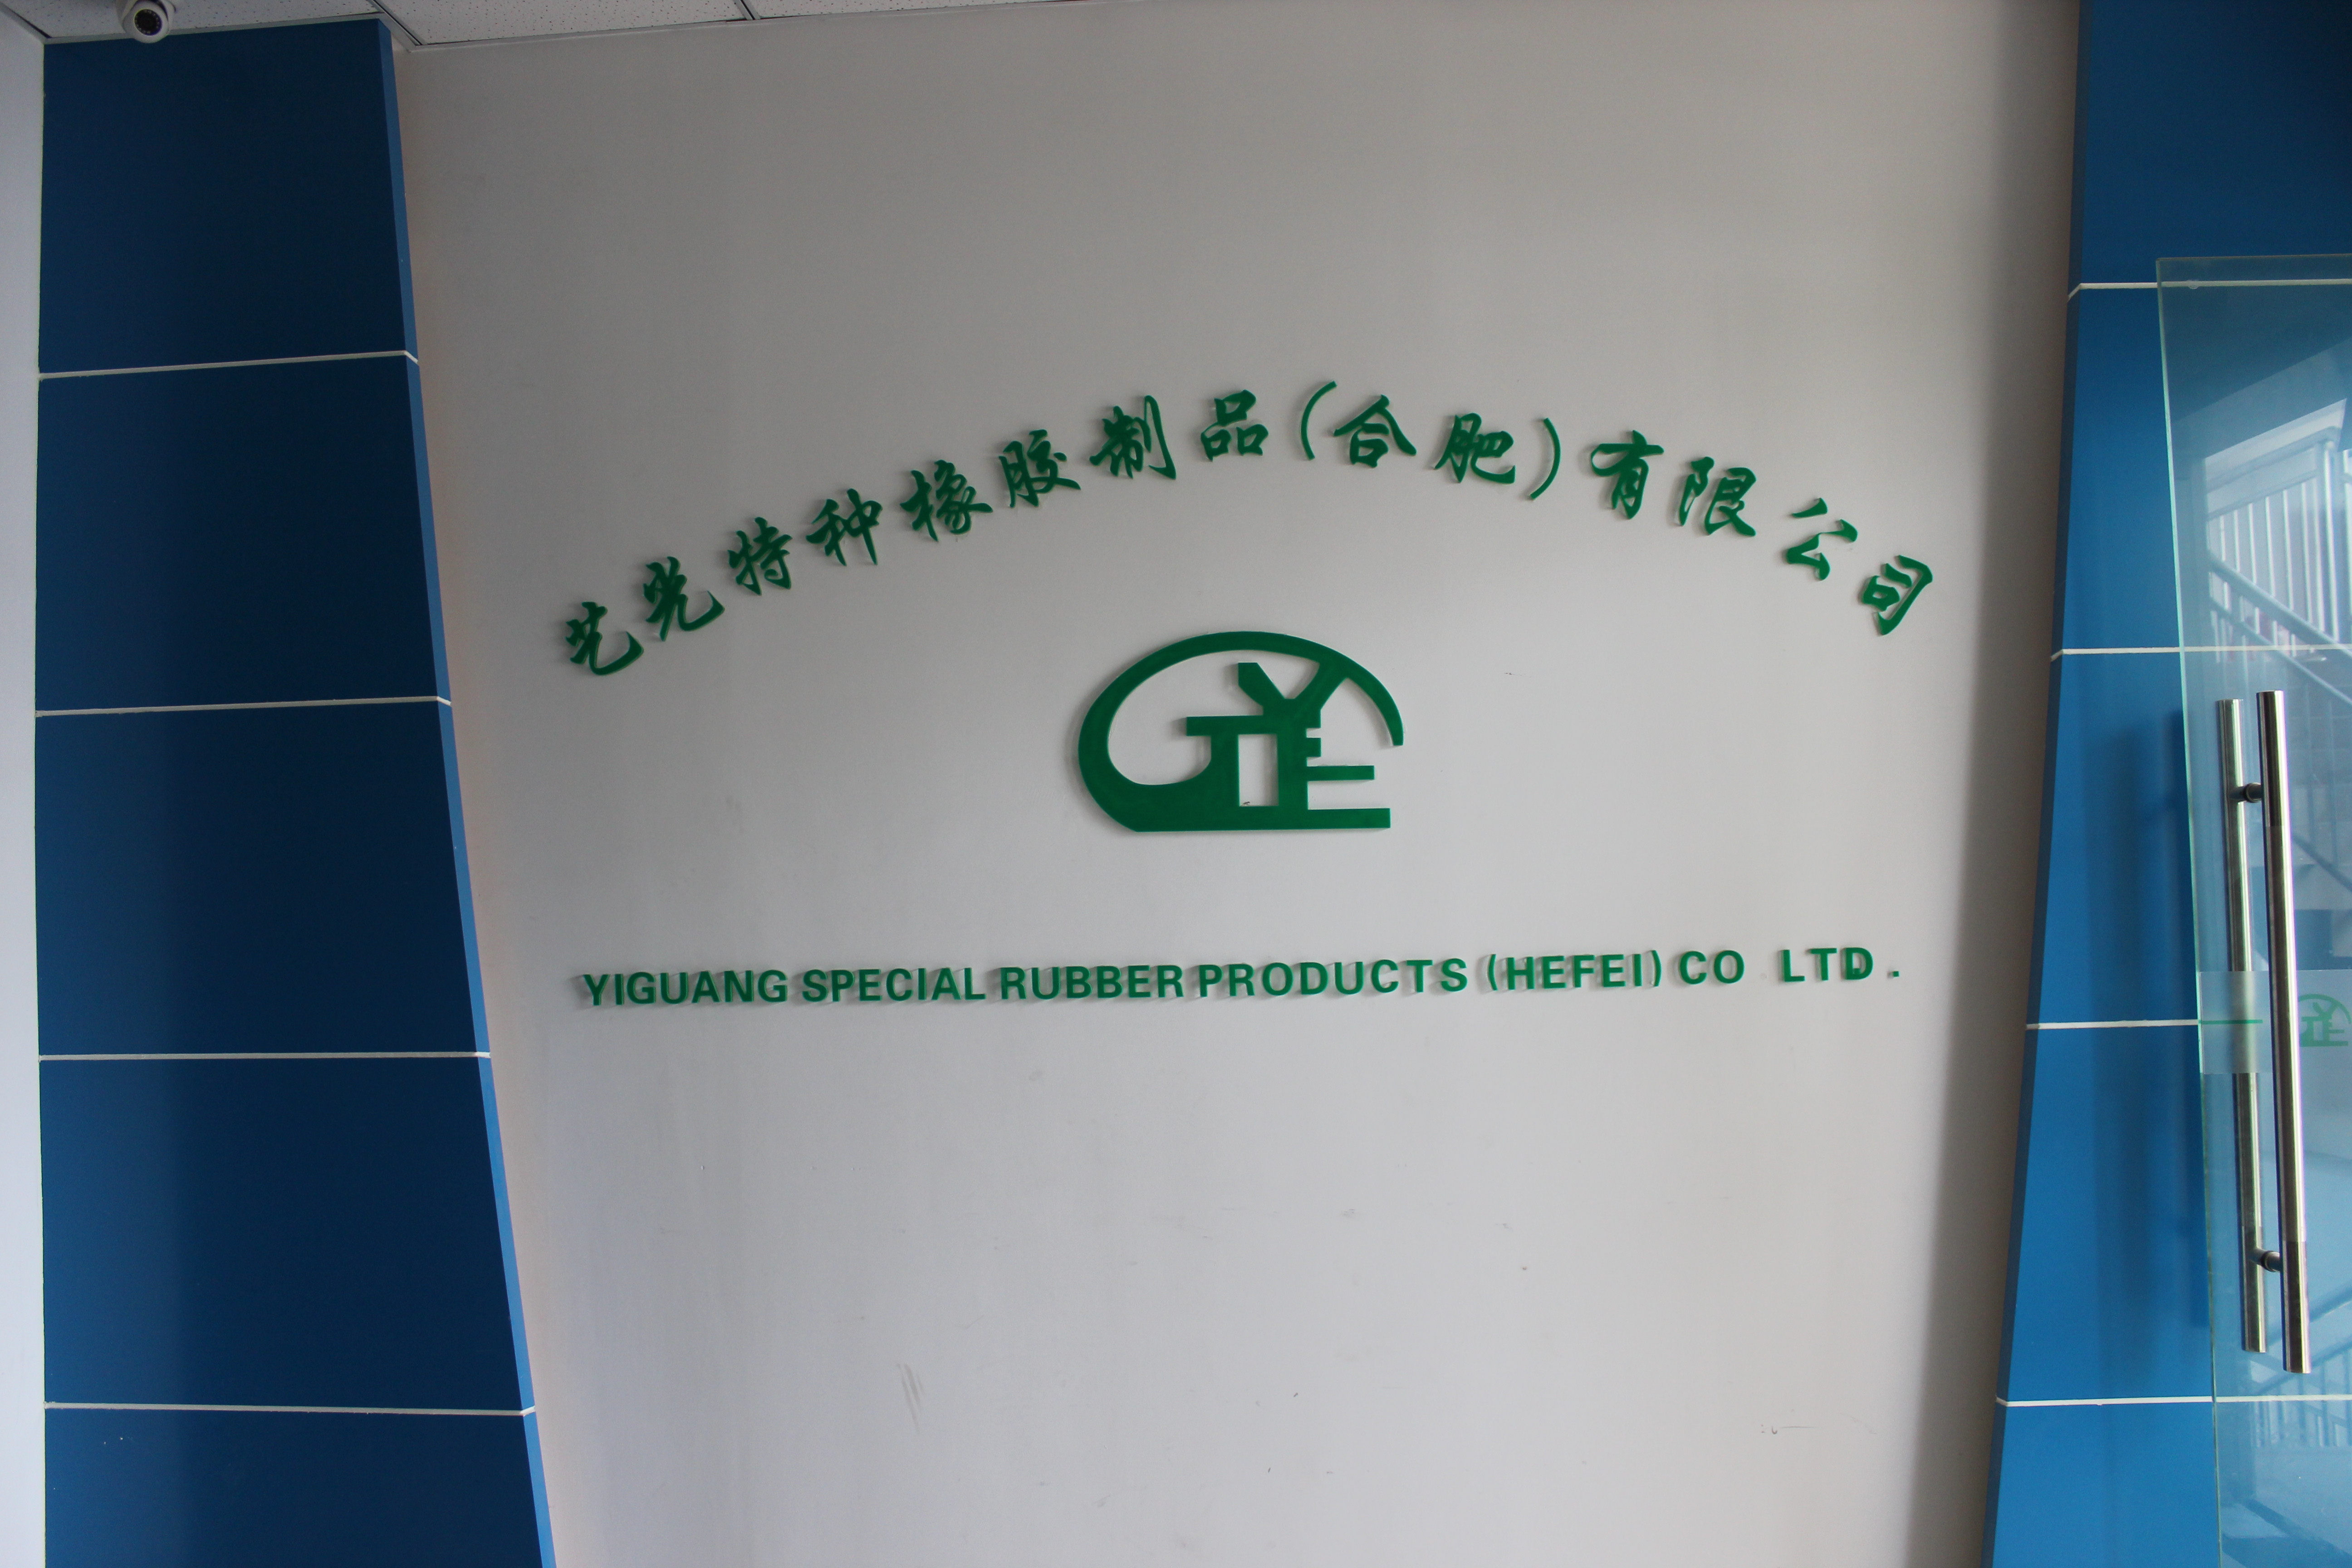 上海藝光特種橡膠製品有限公司